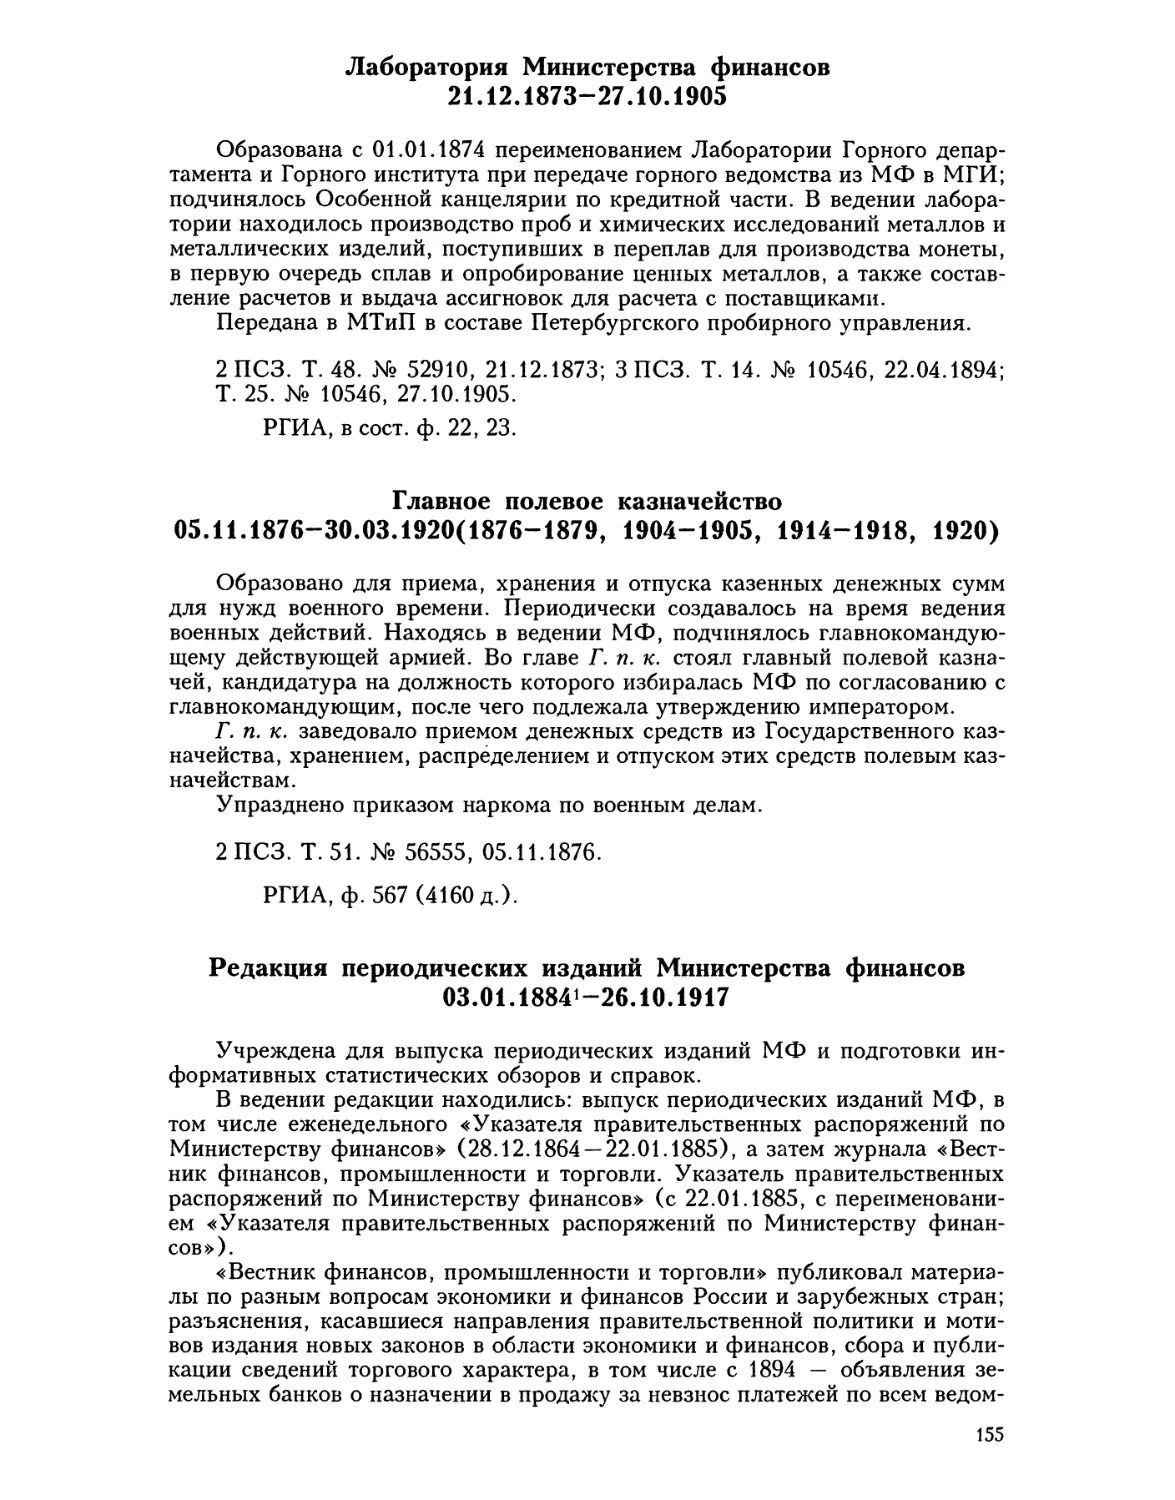 Лаборатория Министерства финансов
Главное полевое казначейство
Редакция периодических изданий Министерства финансов